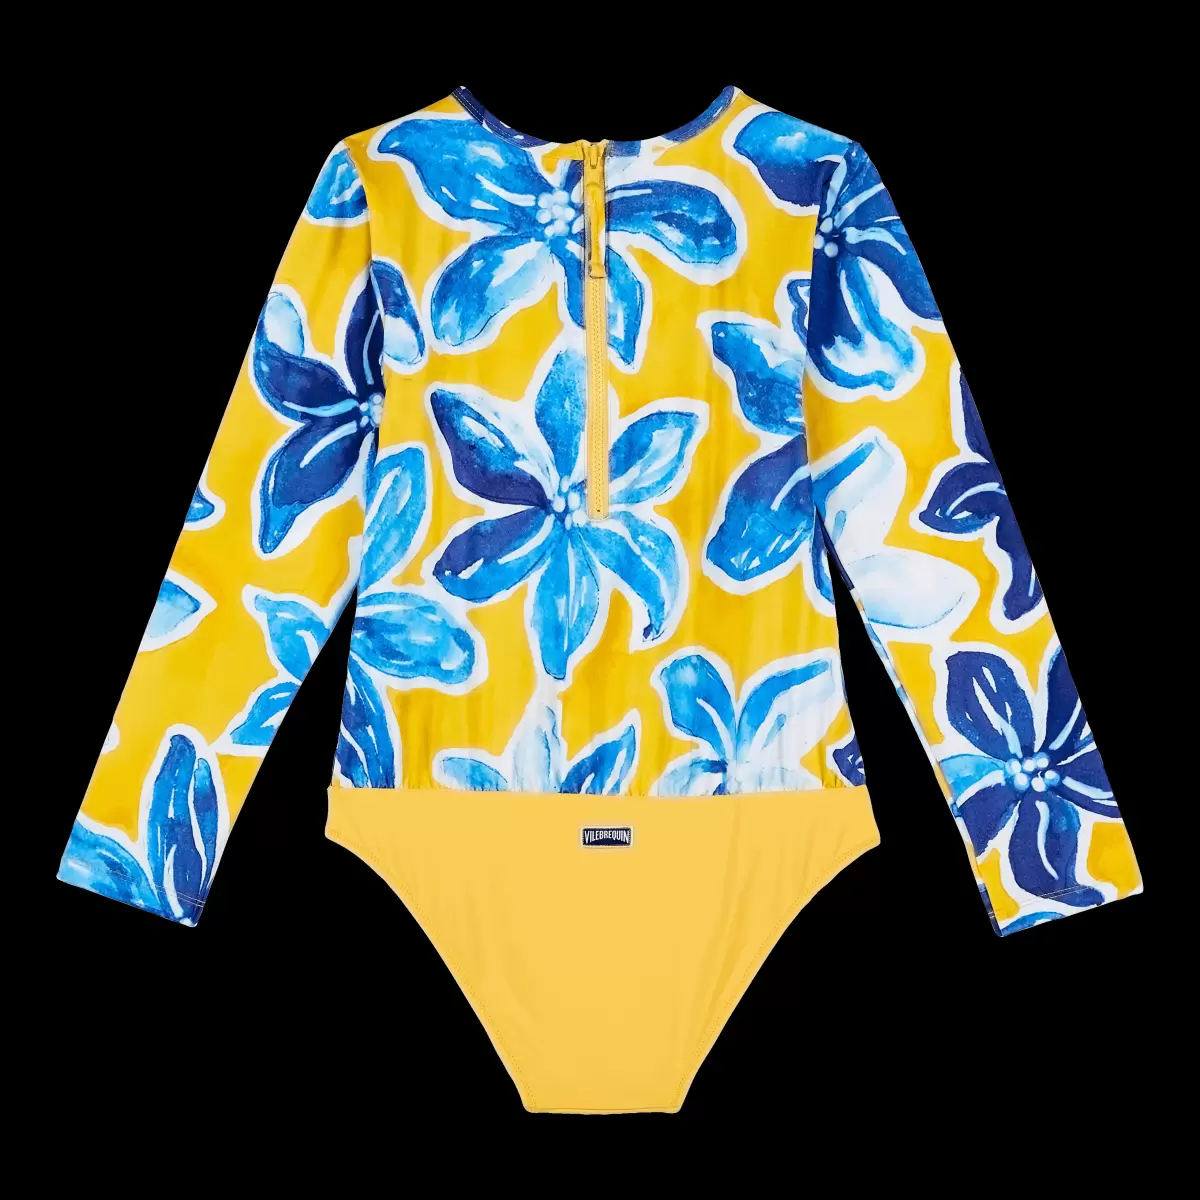 Preisangebot Badeanzug Vilebrequin Sonne / Gelb Mädchen Raiatea Rashguard Für Mädchen - 1